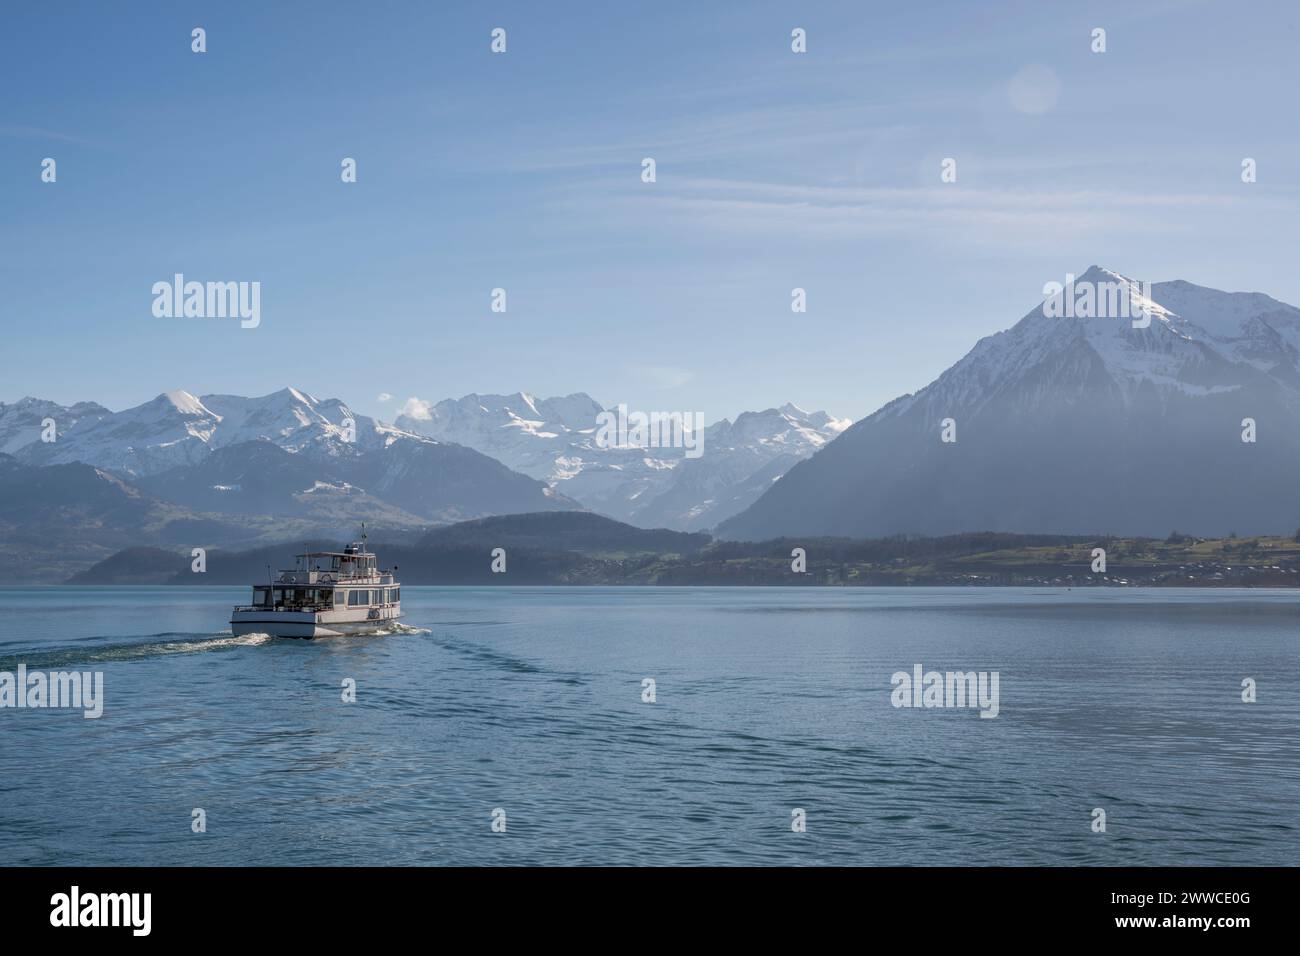 Suisse, Canton de Berne, Thoune, bateau naviguant sur le lac de Thoune Banque D'Images